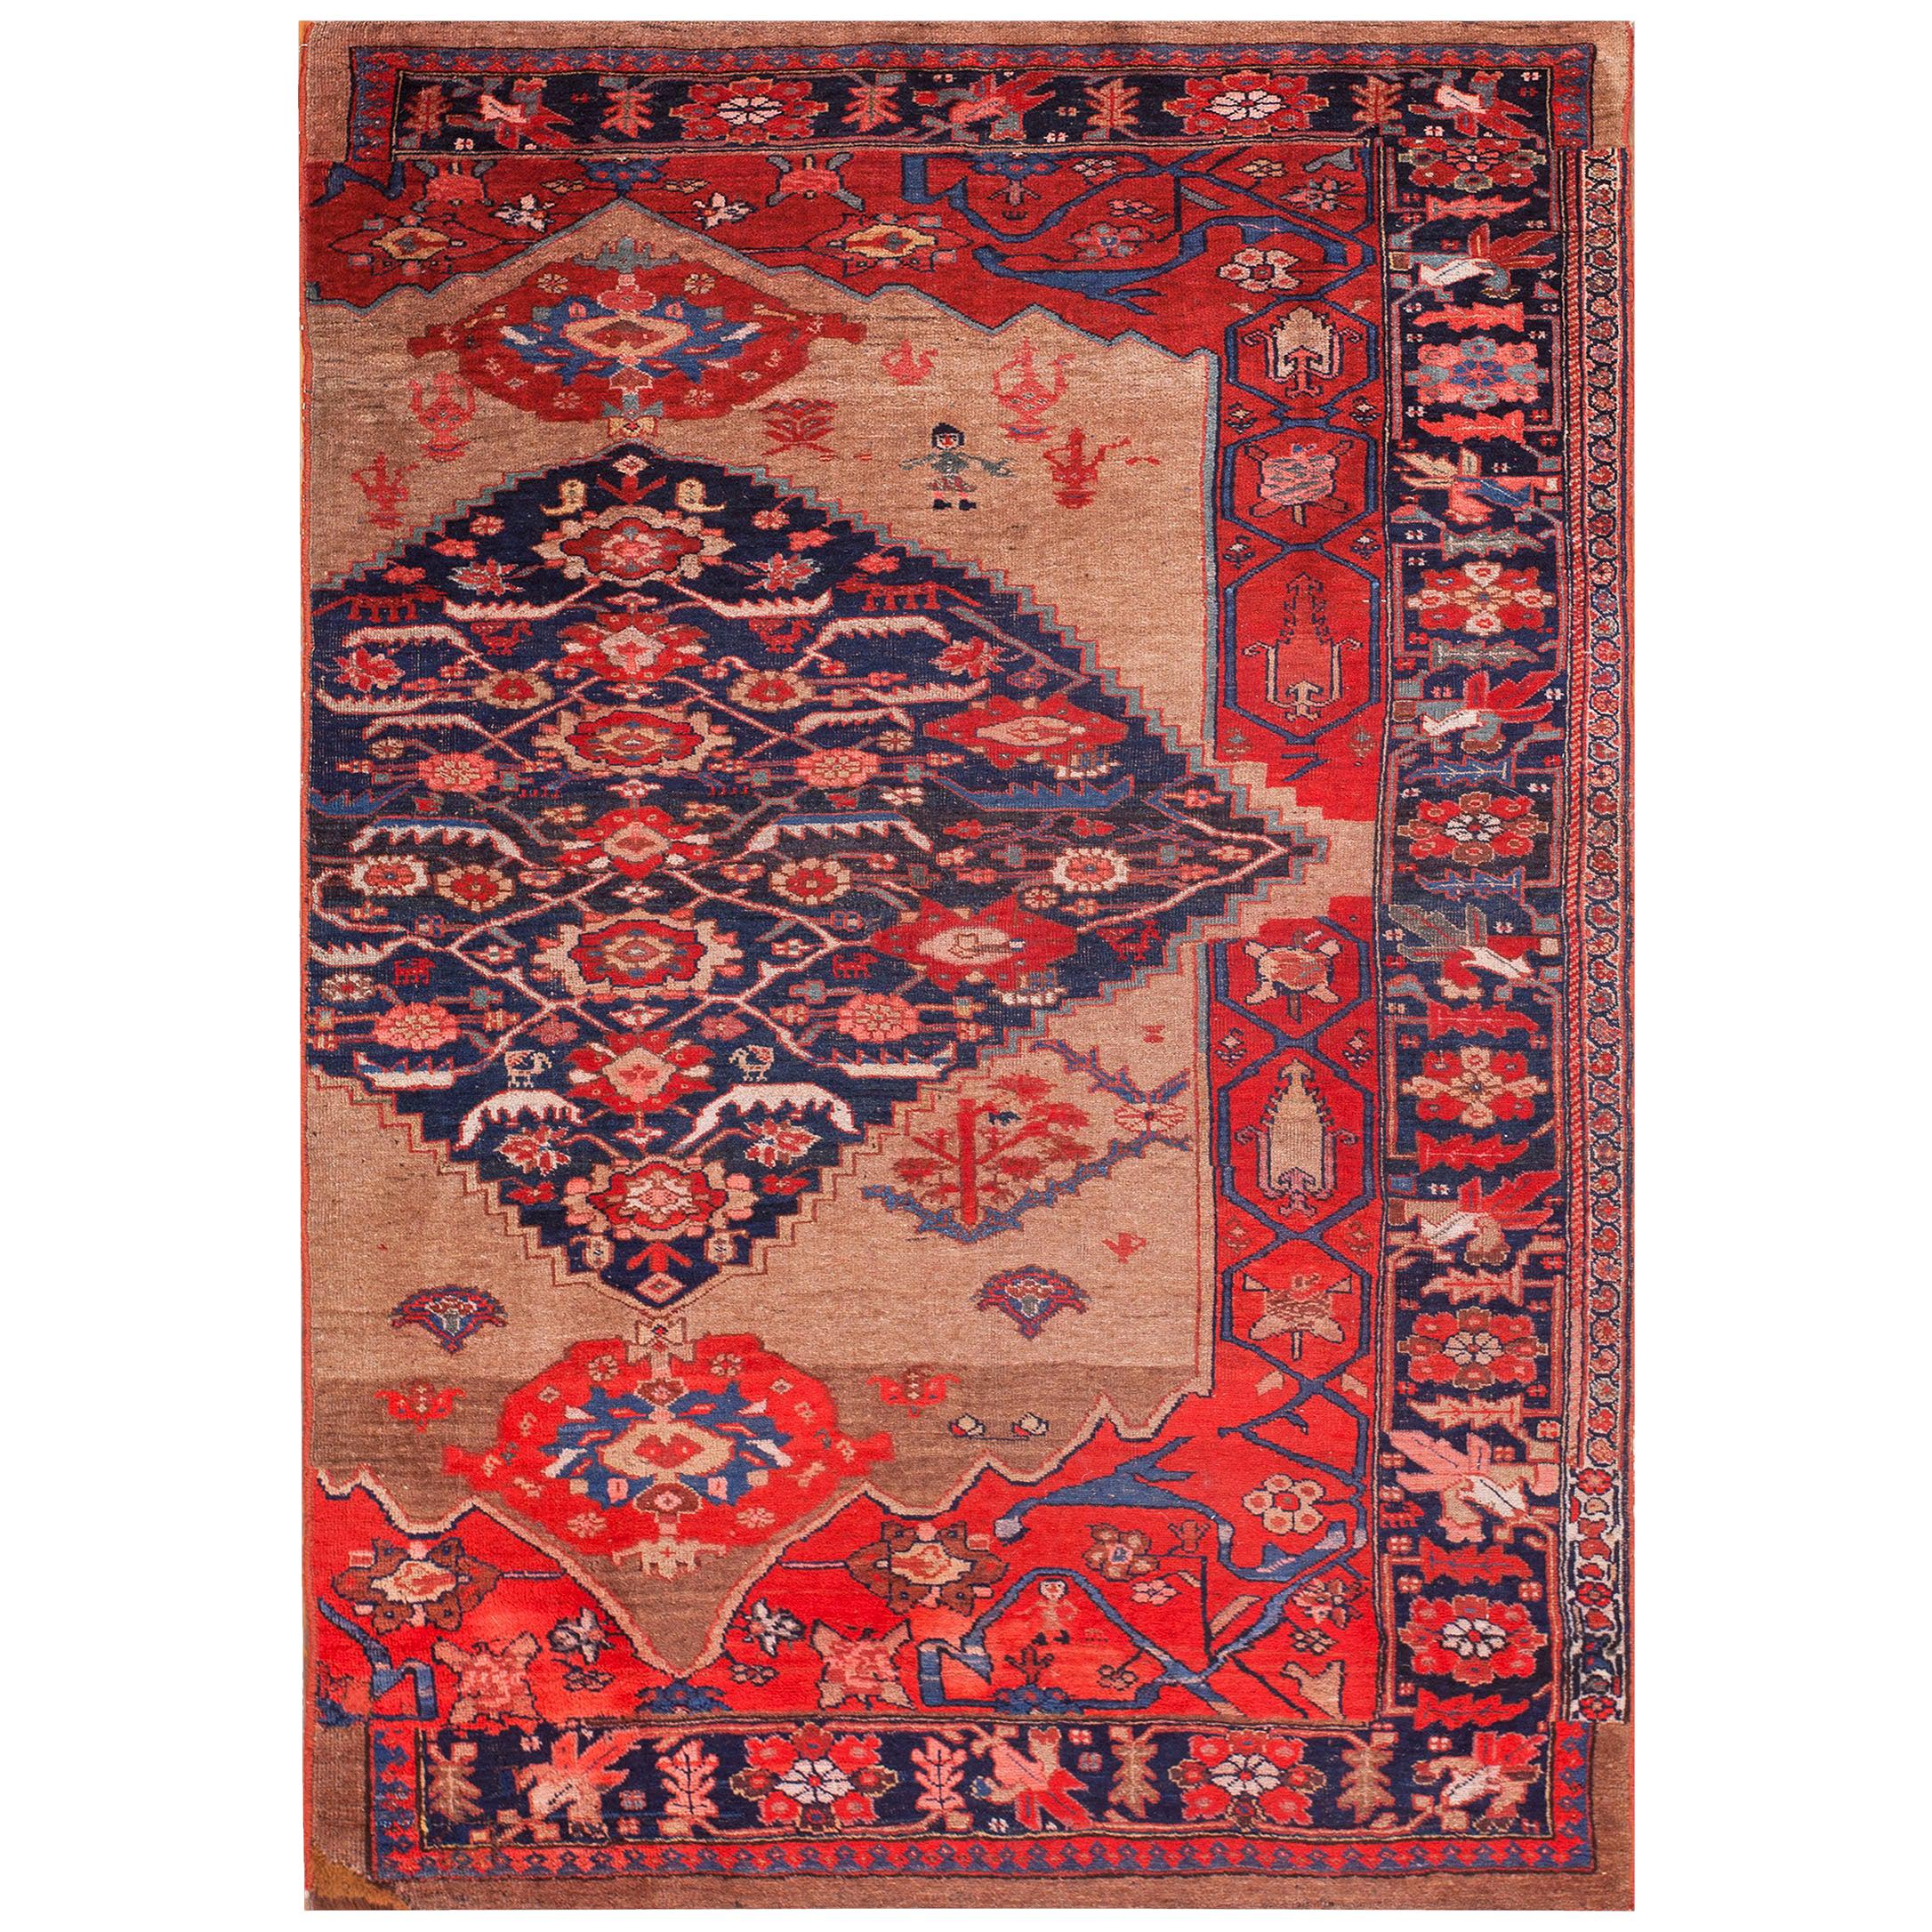 Antique Persian Bijar Rug 4' 6" x 6' 9" 